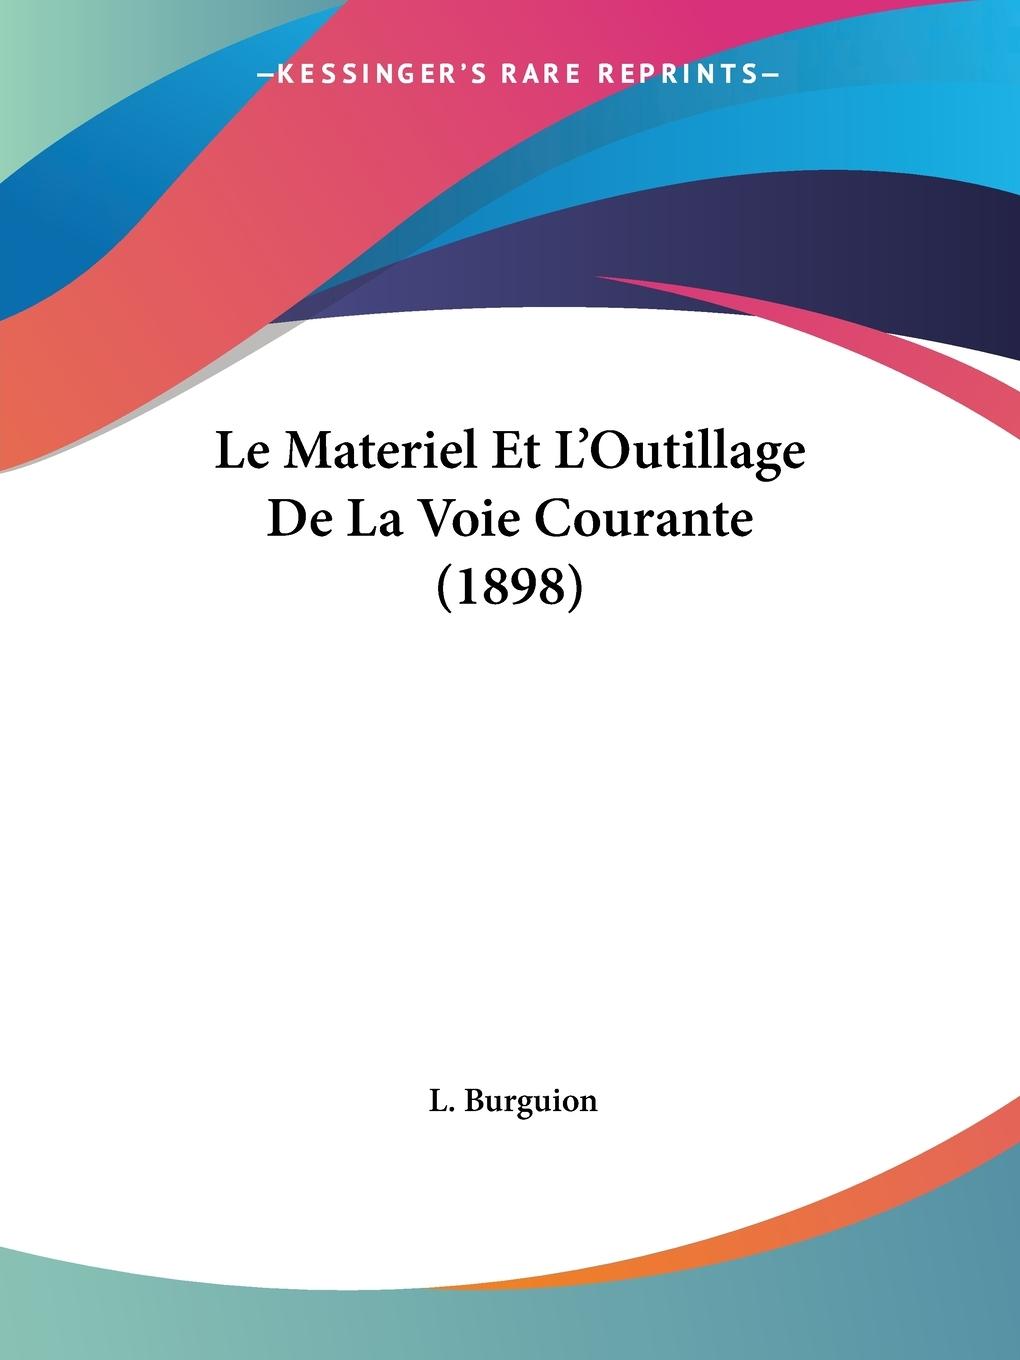 Le Materiel Et L Outillage De La Voie Courante (1898) - Burguion, L.